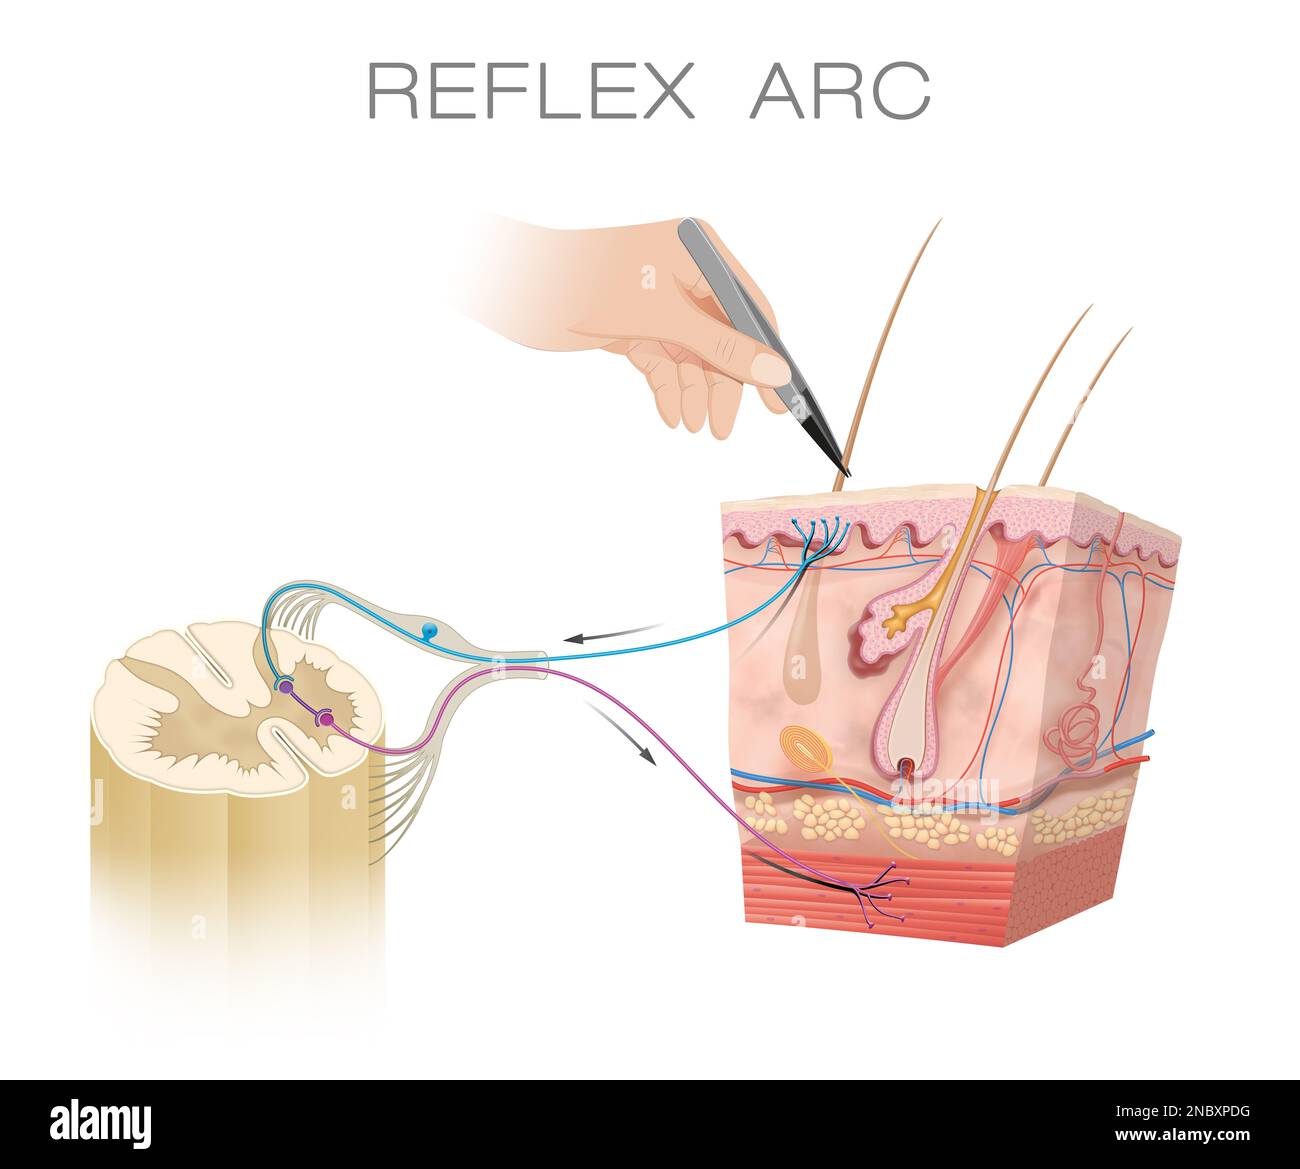 Schéma anatomique de l'arc réflexe spinal Banque D'Images